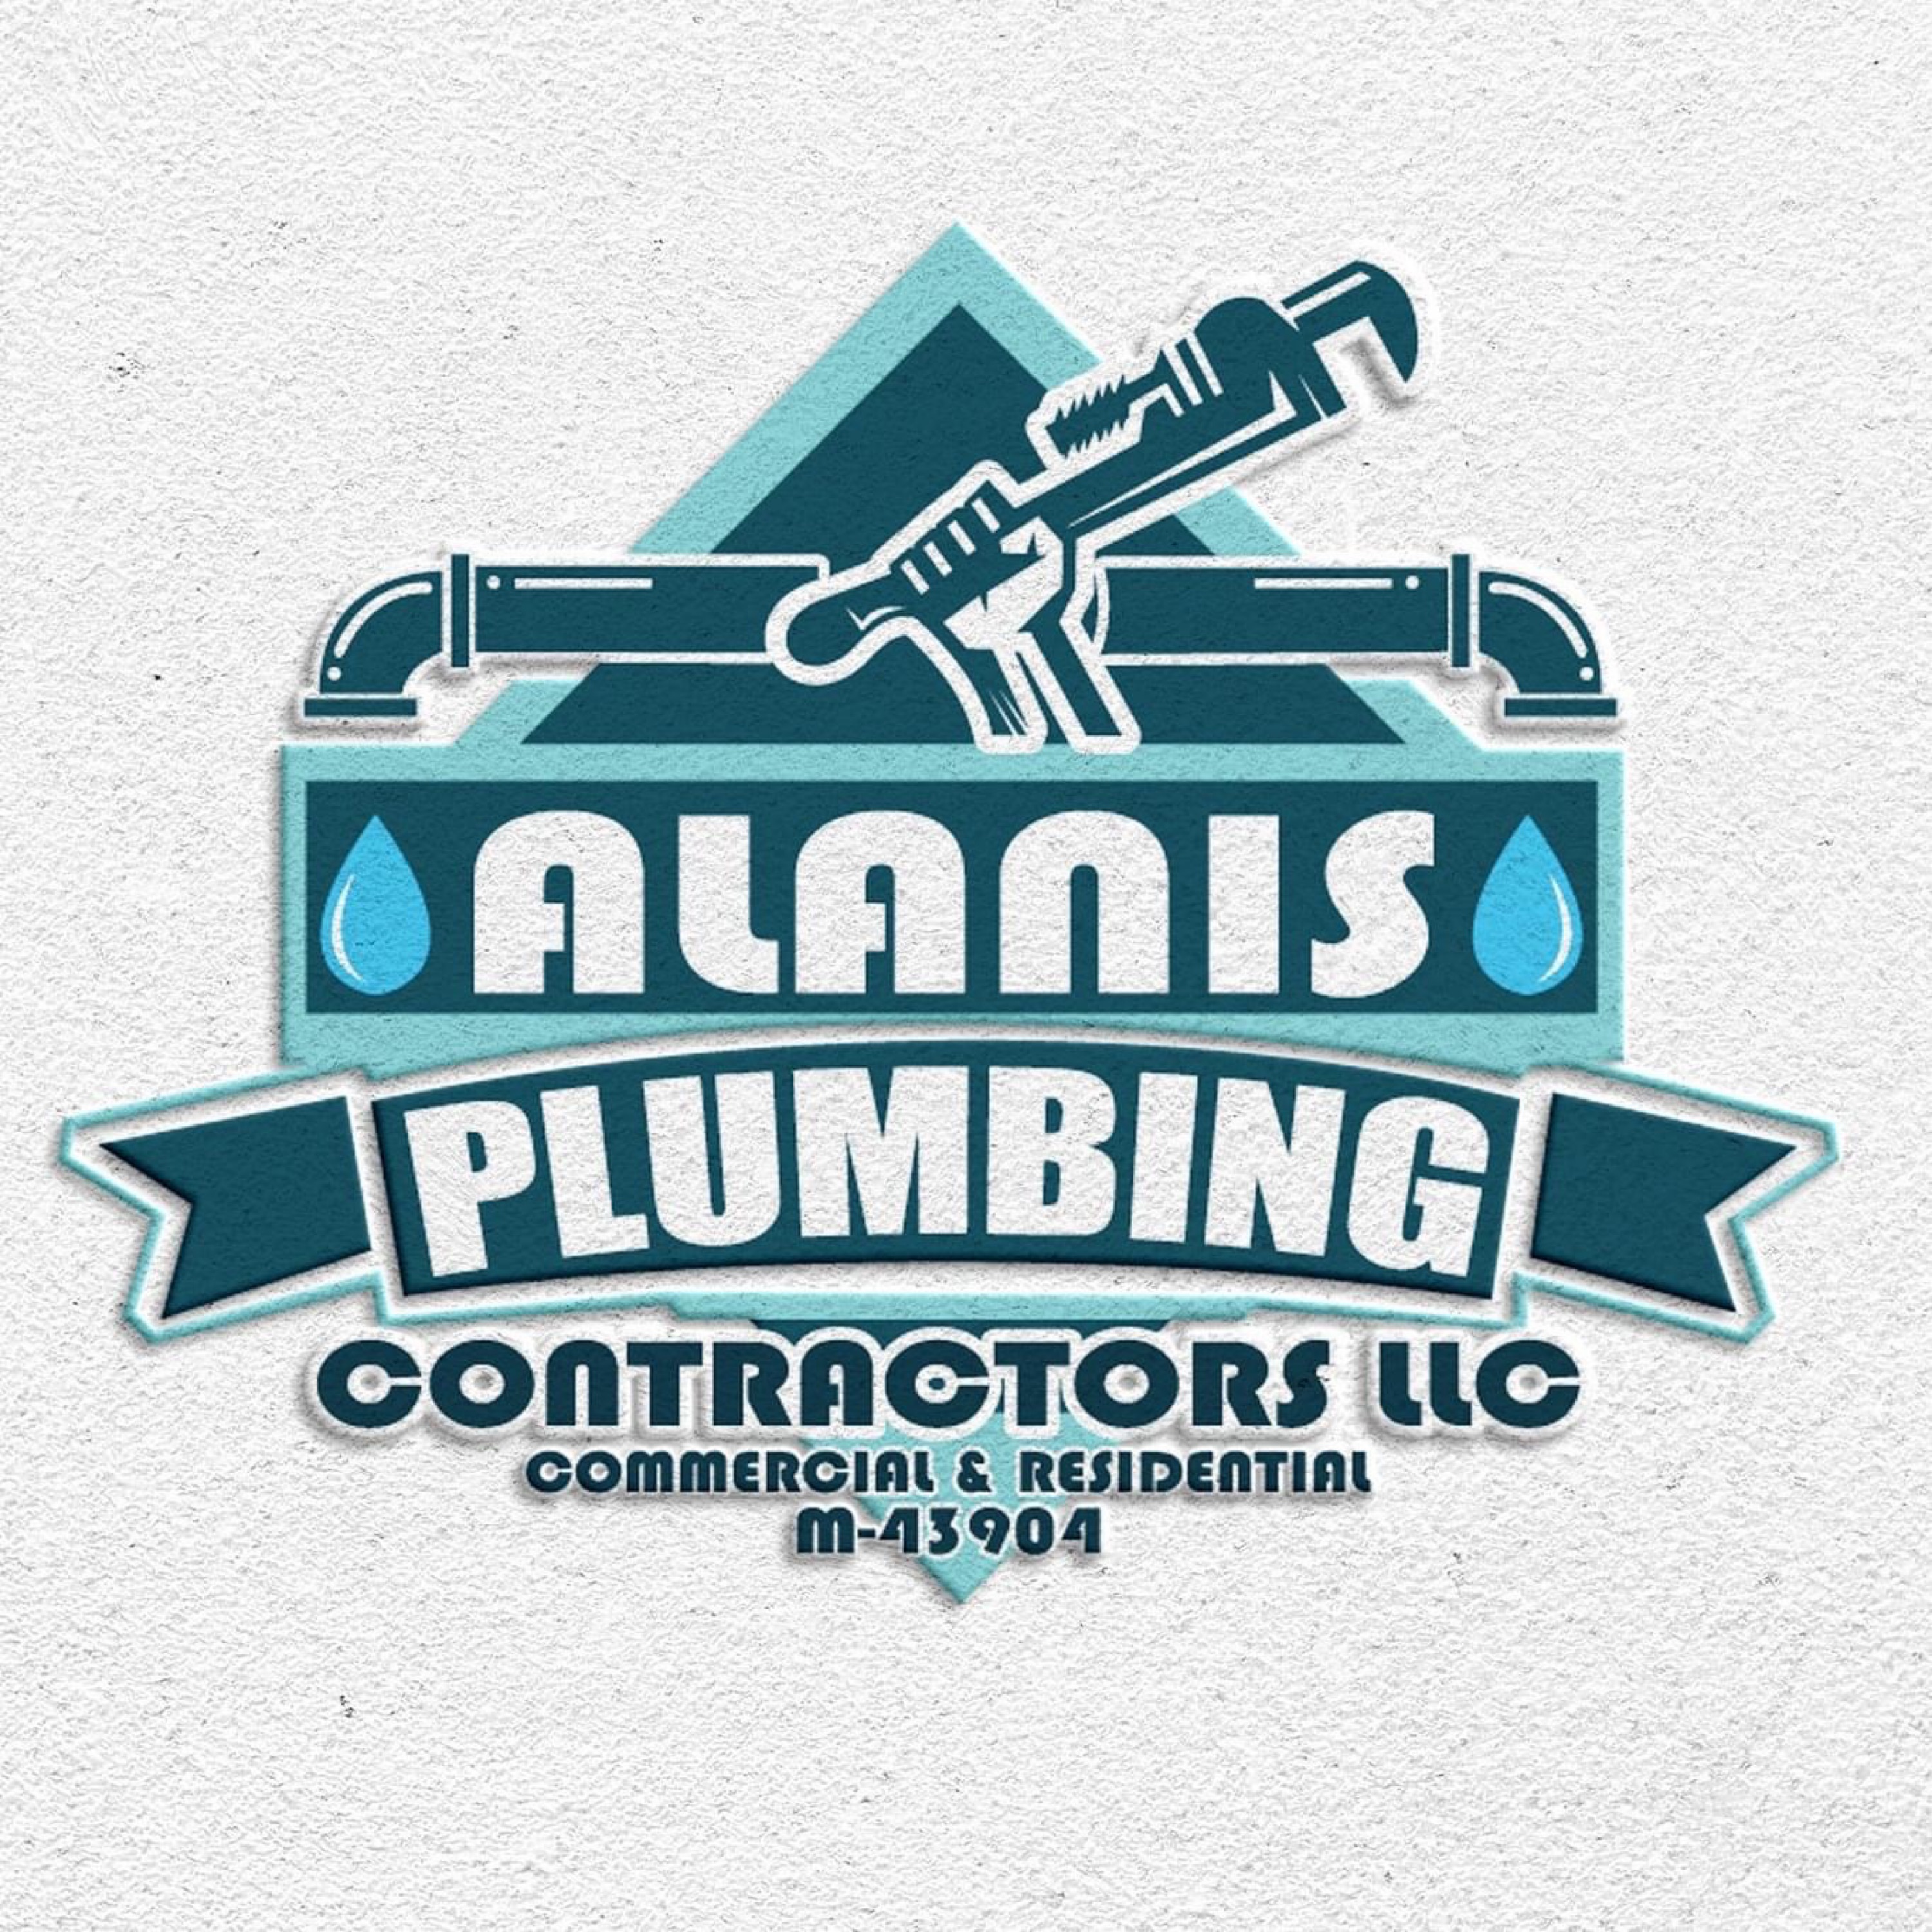 Alanis Plumbing Contractors LLC Logo